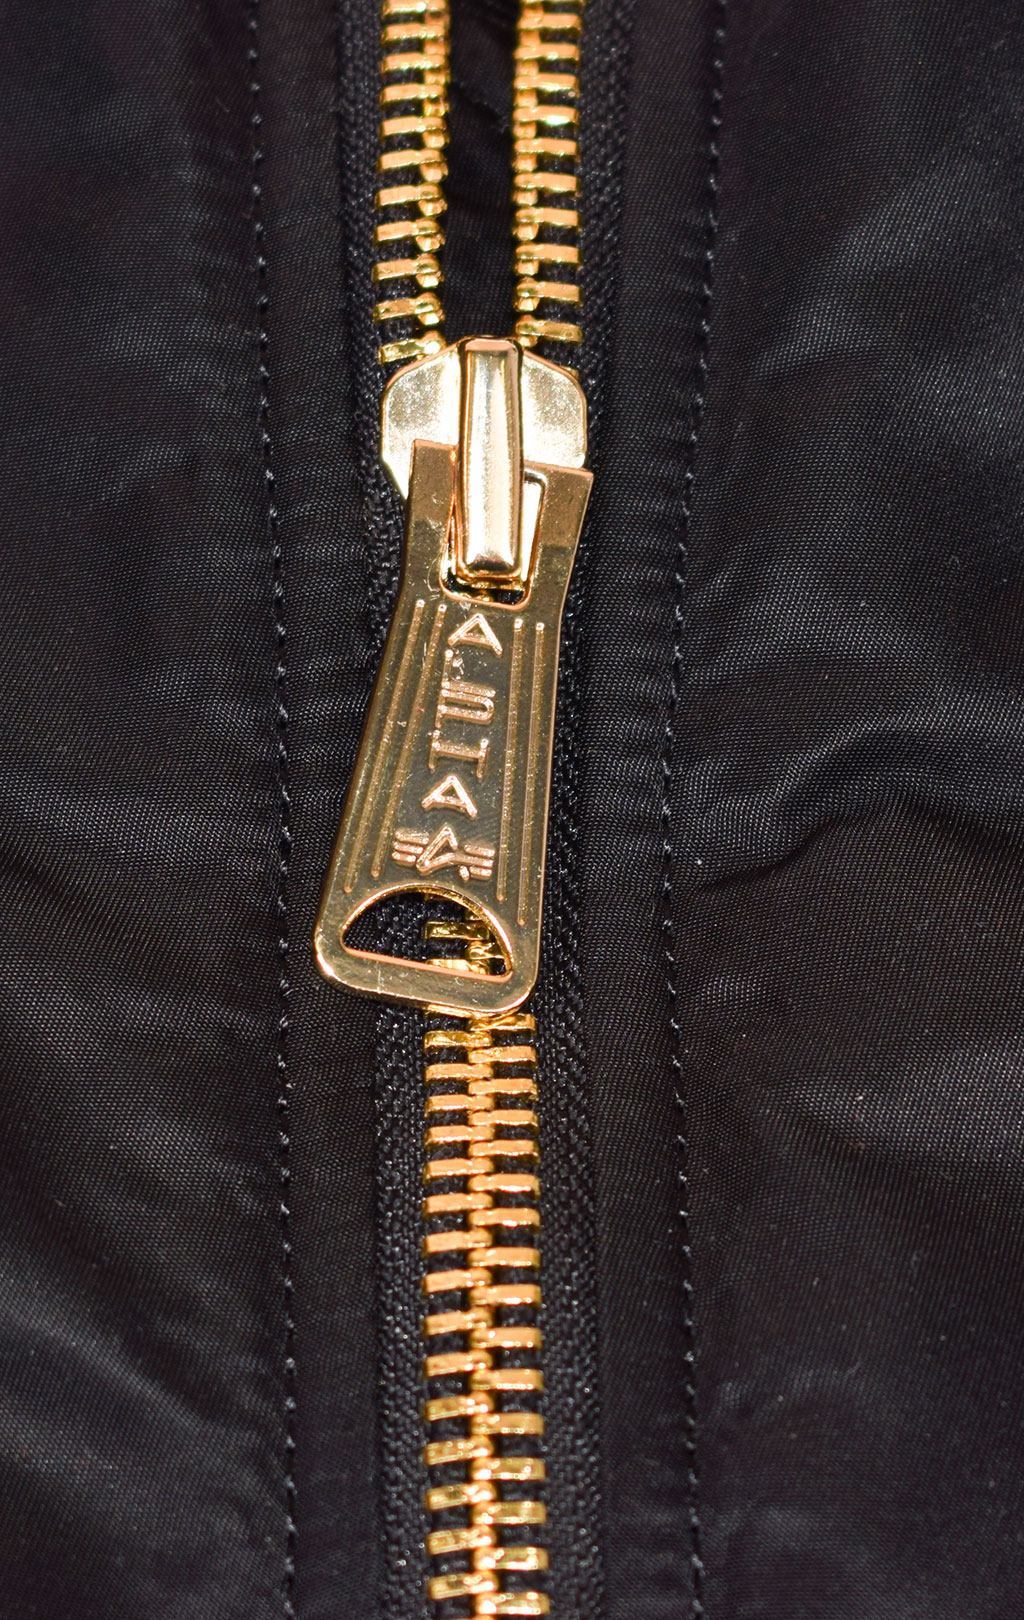 Женская куртка-бомбер удлинённая ALPHA INDUSTRIES COAT PM MA-1 black 